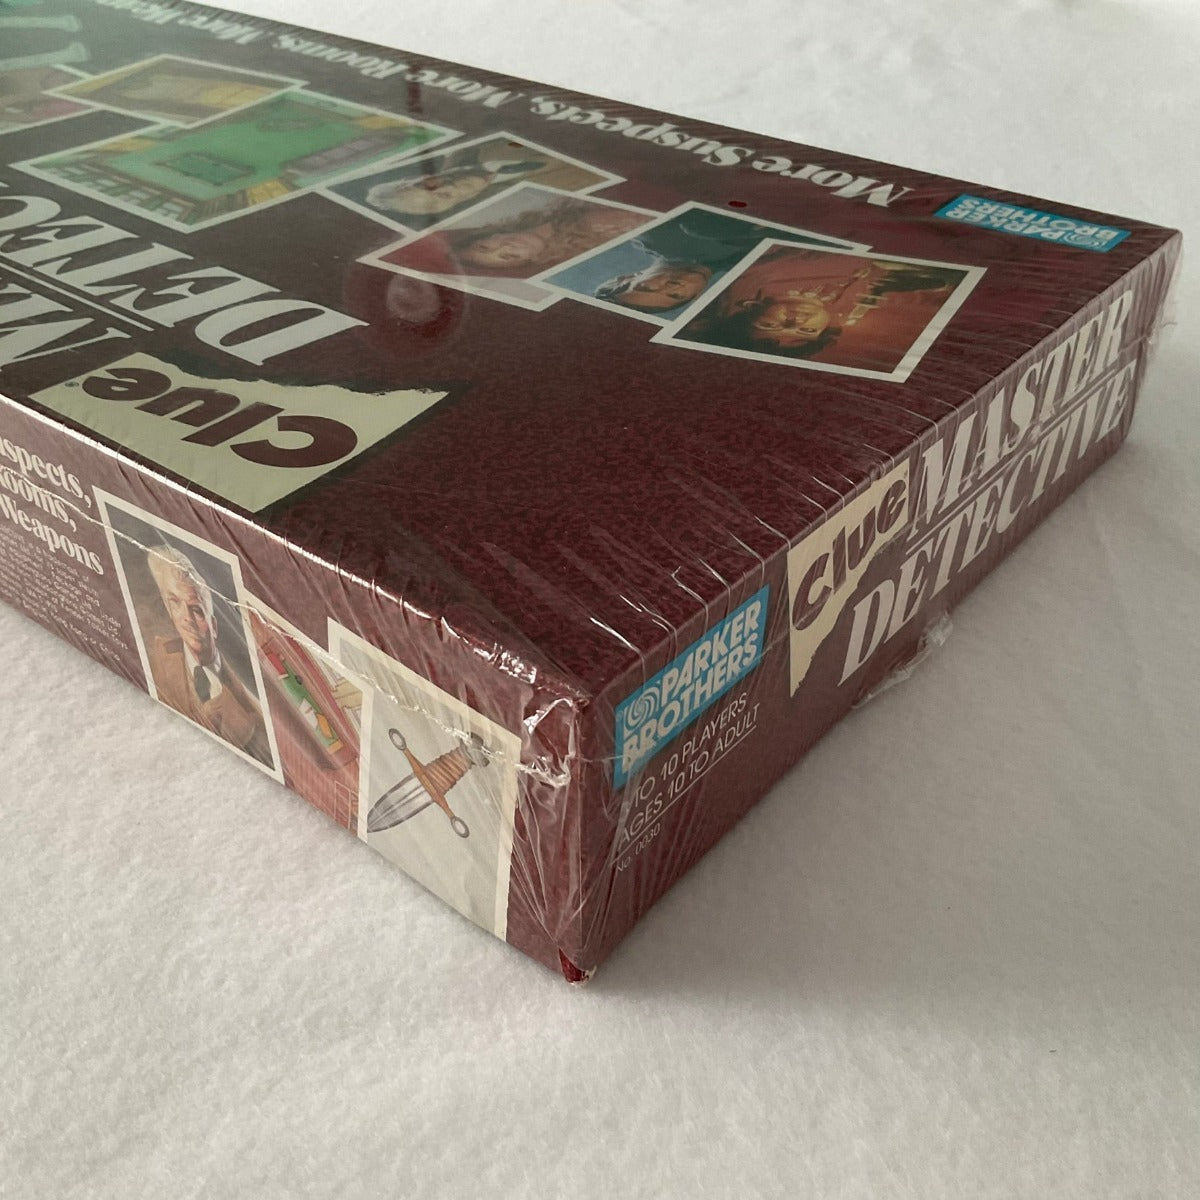 Clue Master Detective Board Game 1998 Version - Left Corner